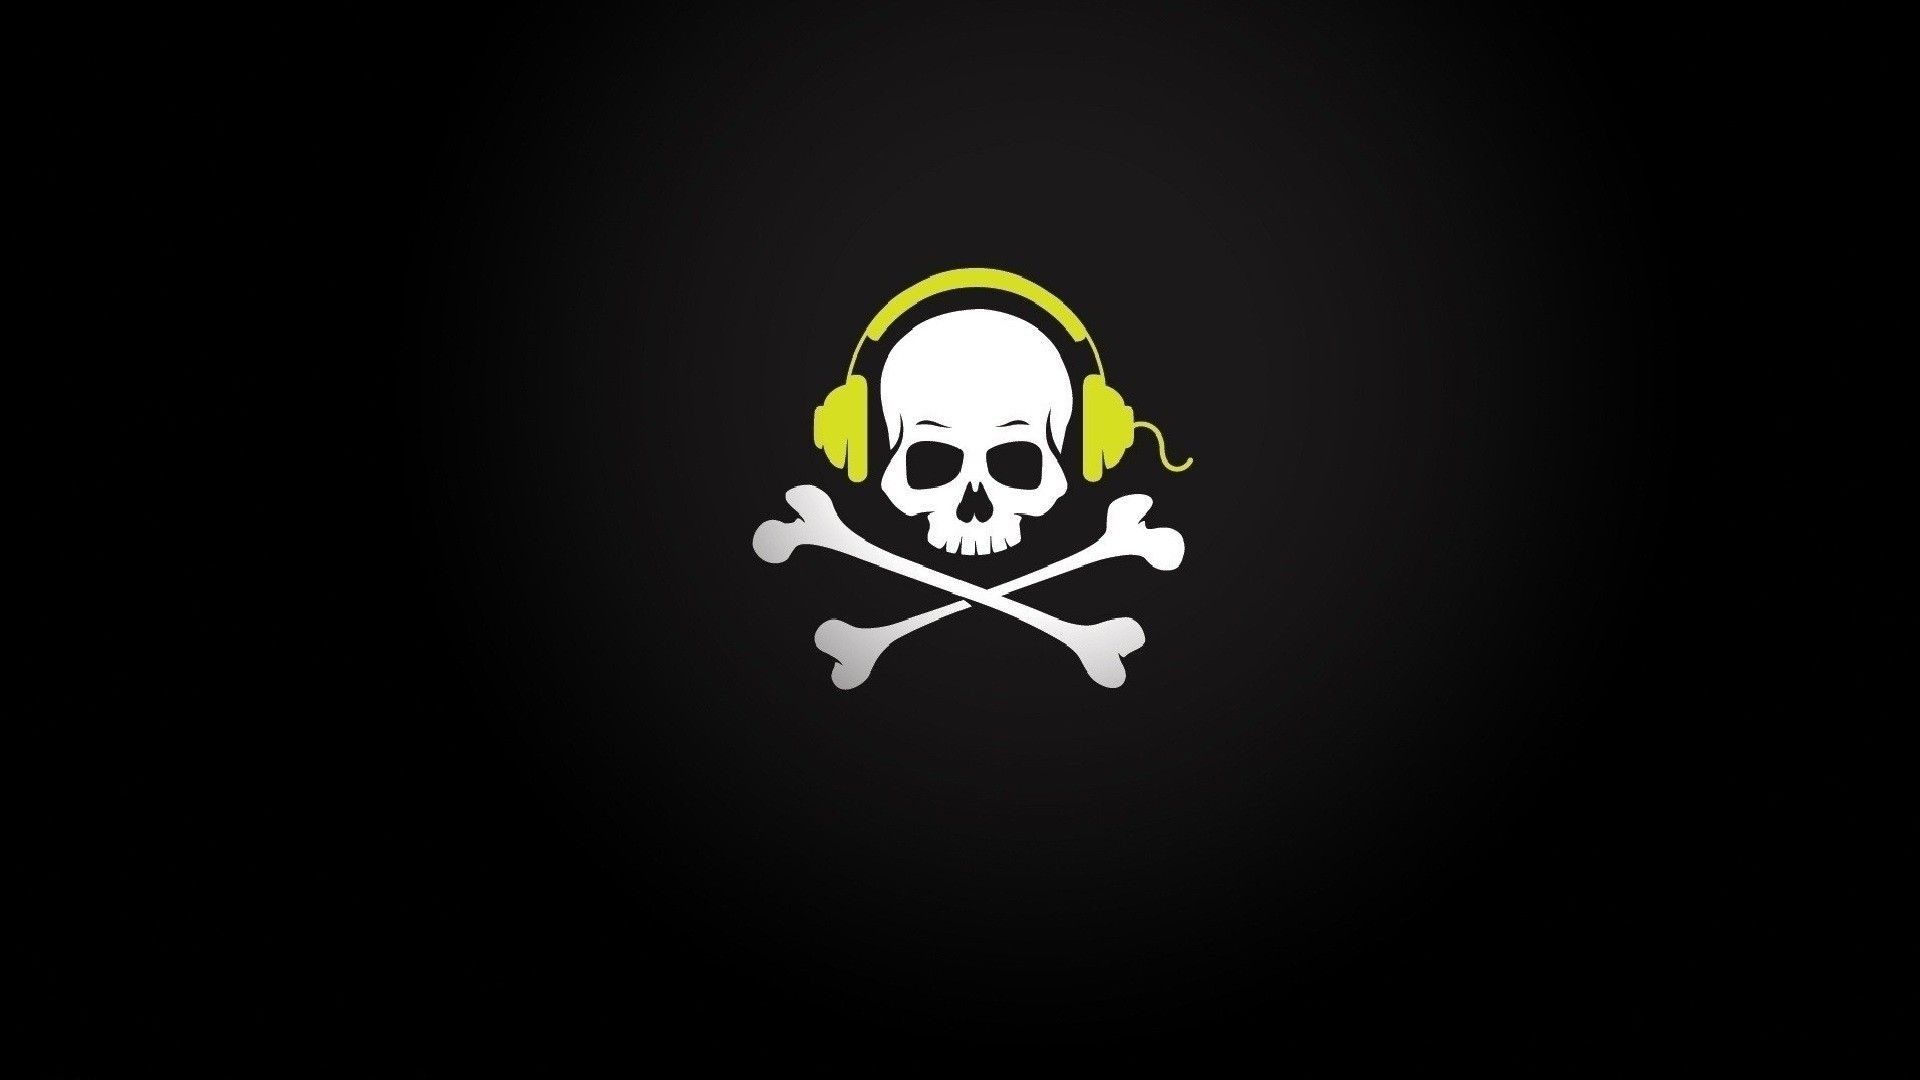 Pirate Skull in yellow headphones Desktop wallpaper 1920x1080